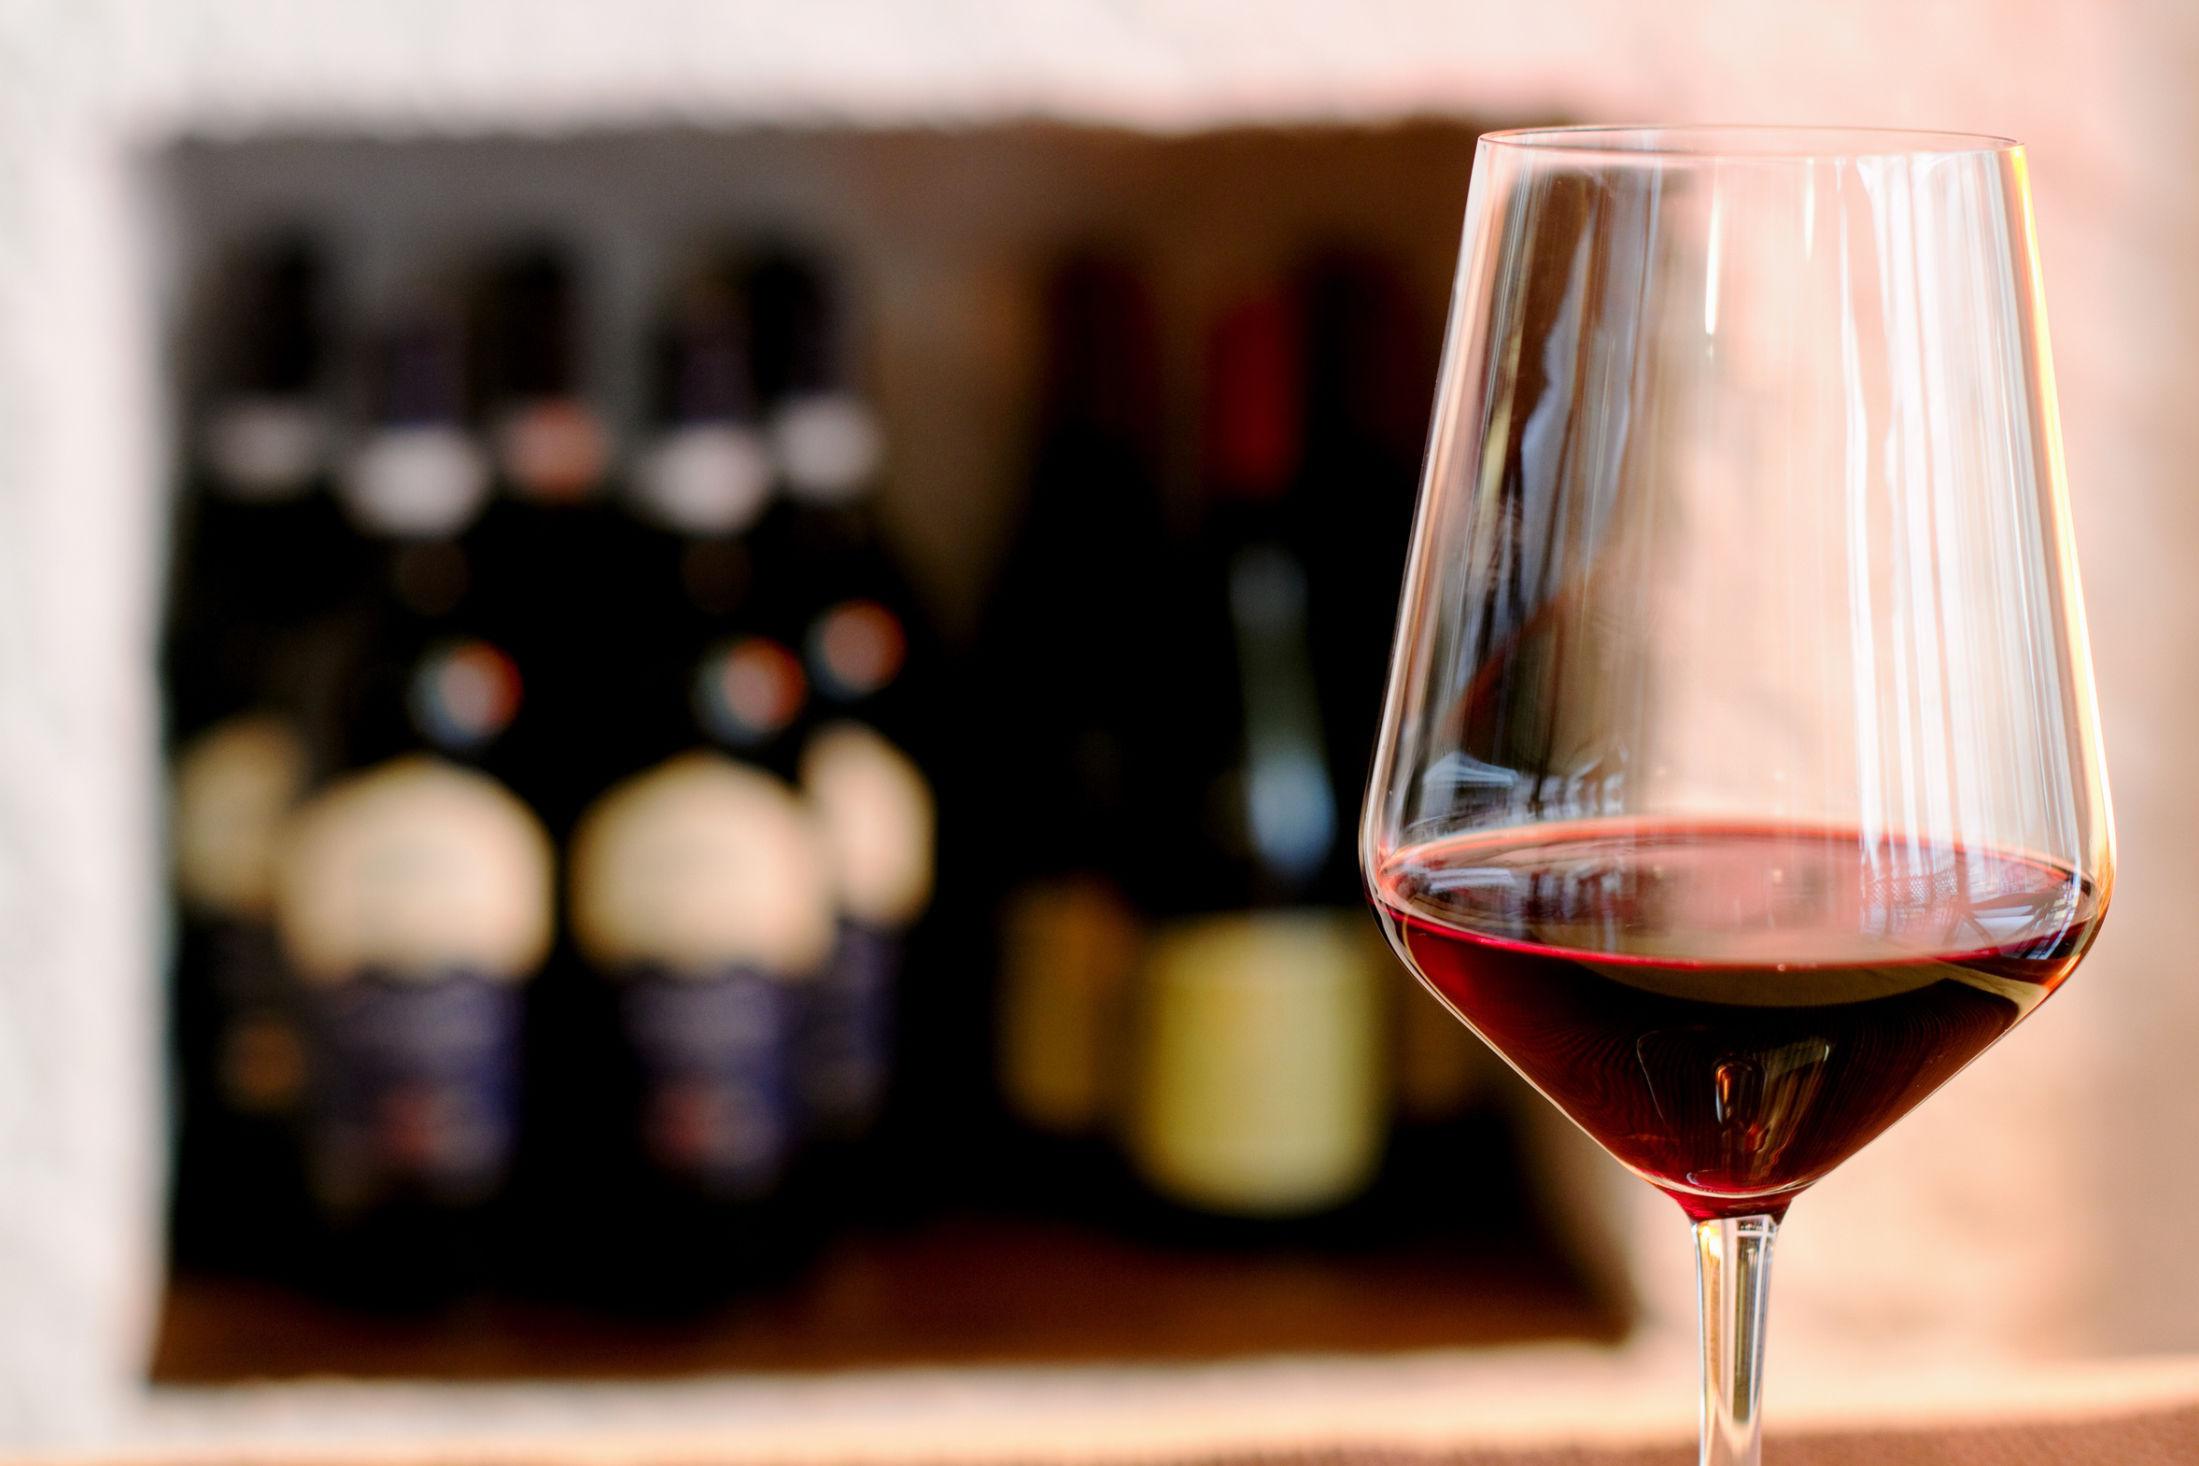 RØDT: Det er rødvin som gjelder til påskelammet. Gjerne en fra Rioja. Foto: Donatelle Tandelli/NTB Scanpix.